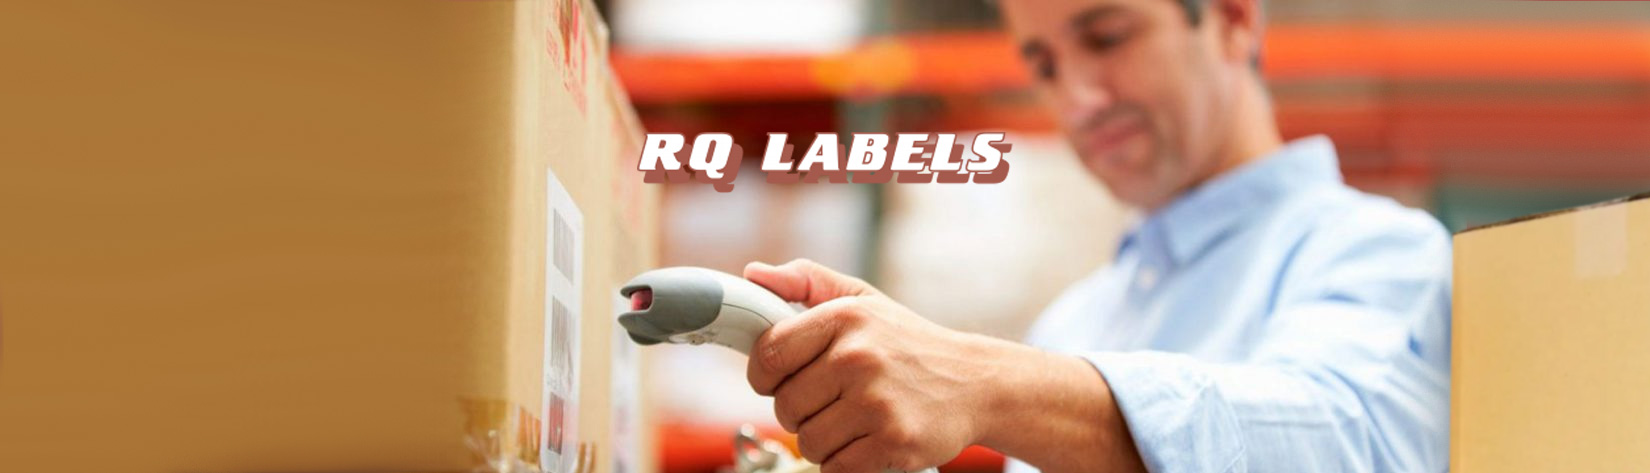 RQ Labels te ofrece la solución integral a tus necesidades de identificación, codificación y trazabilidad mediante etiquetas adhesivas o tags